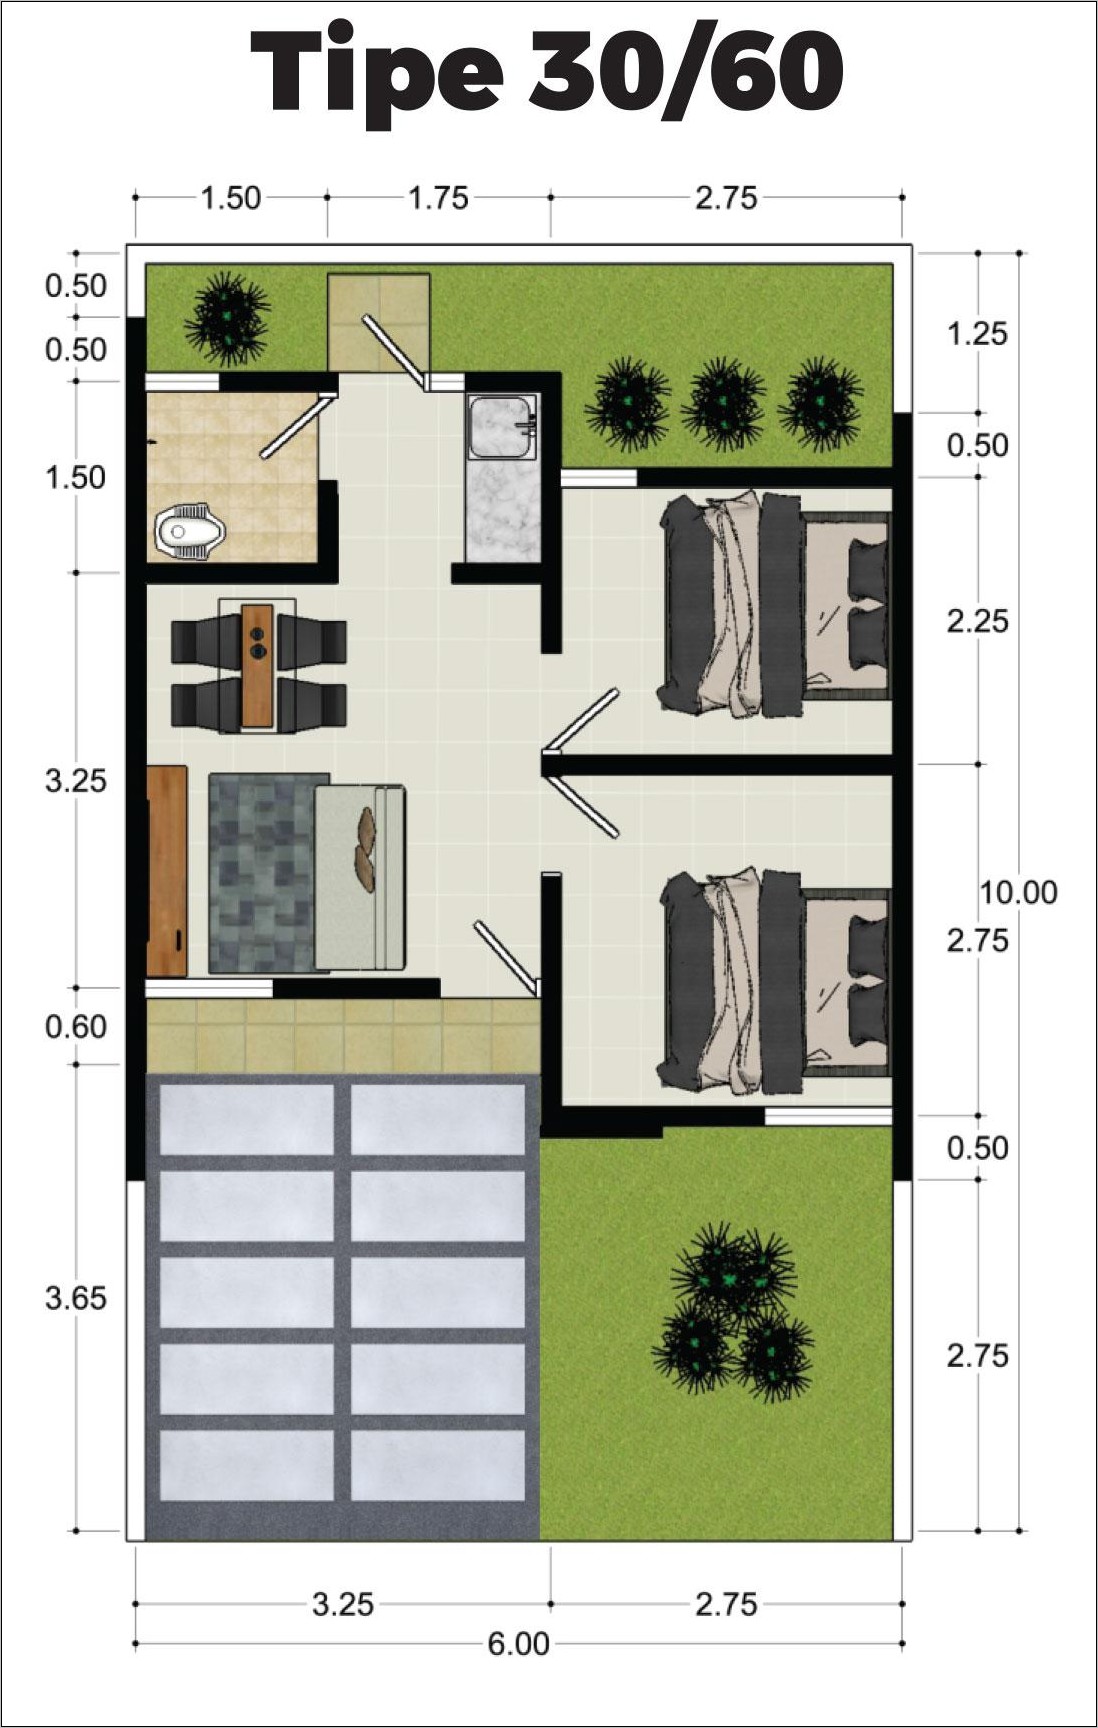 Desain Denah Rumah Subsidi Type 30 60 - Gambar Design Rumah - Denah Rumah Type 30 60 Subsidi